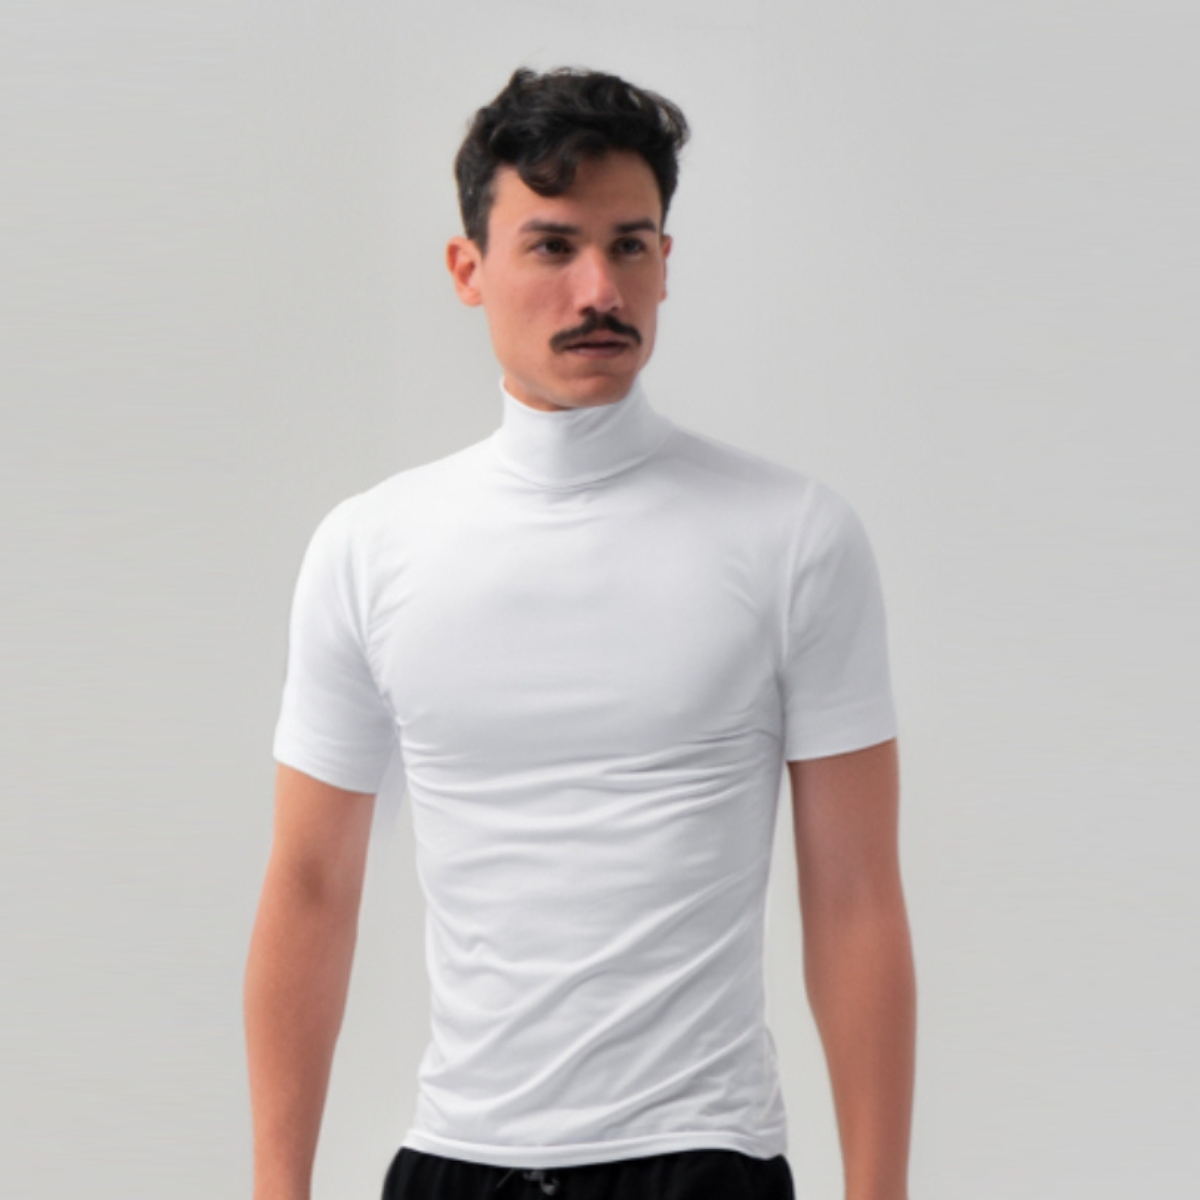 Camiseta Curta Gola Alta Proteção Solar 50+ Branca